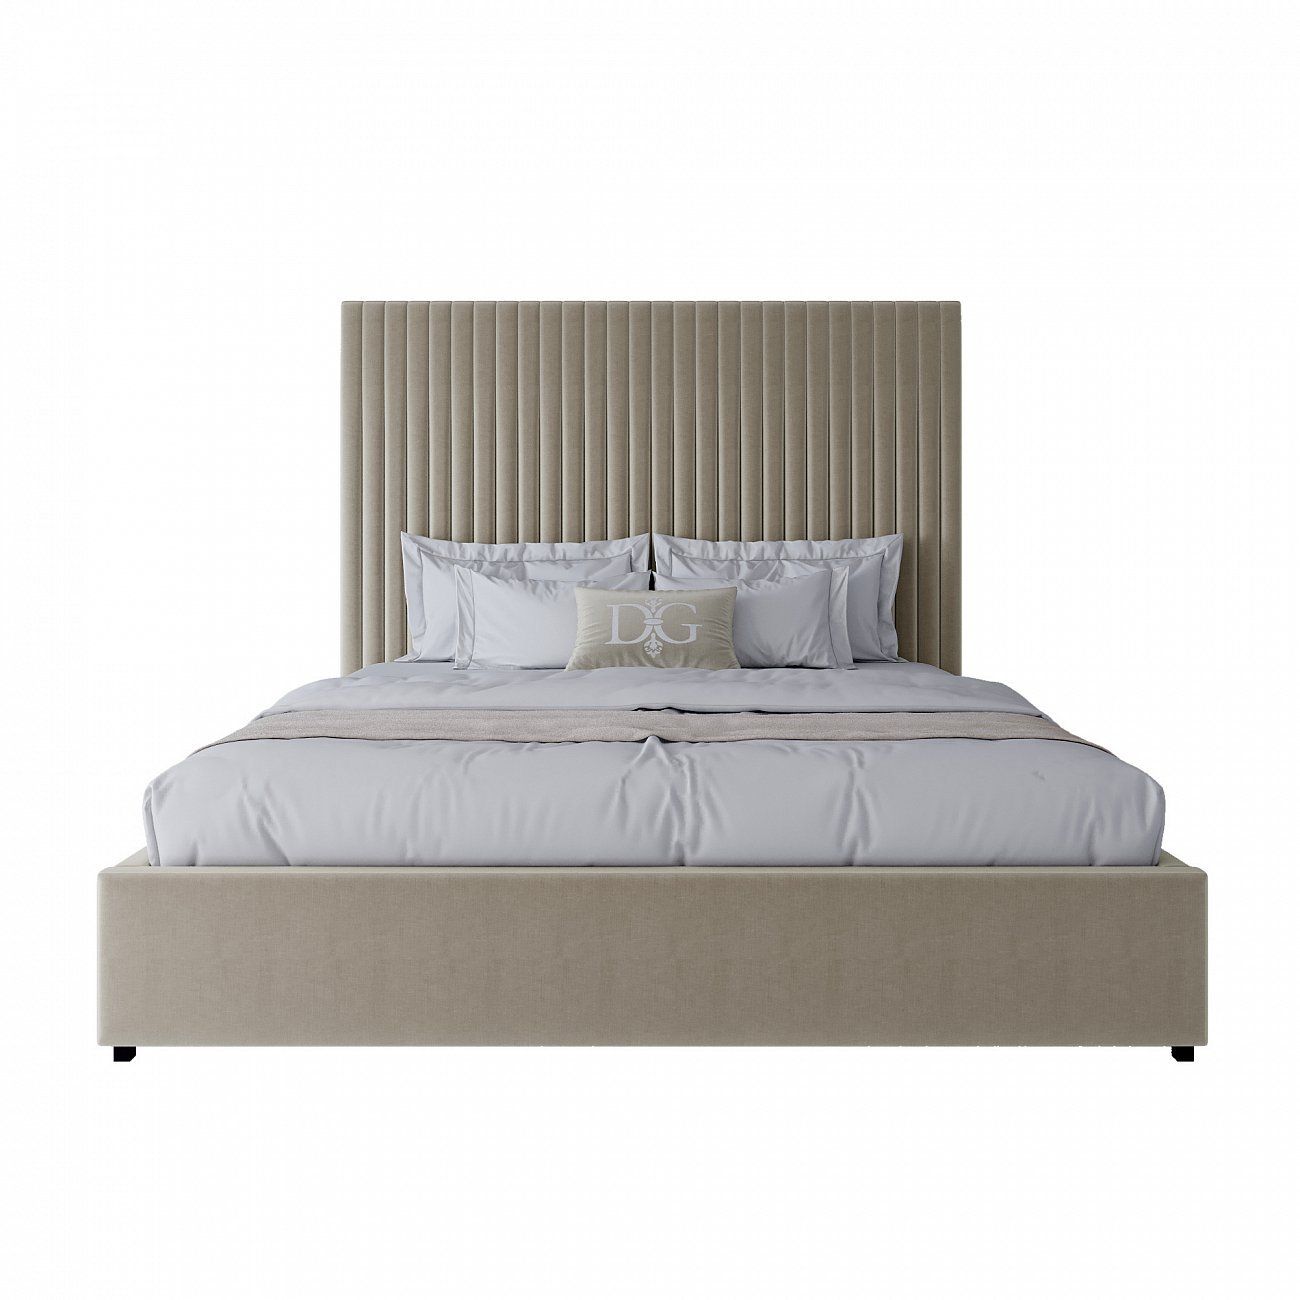 Double bed 160x200 beige-pink Mora